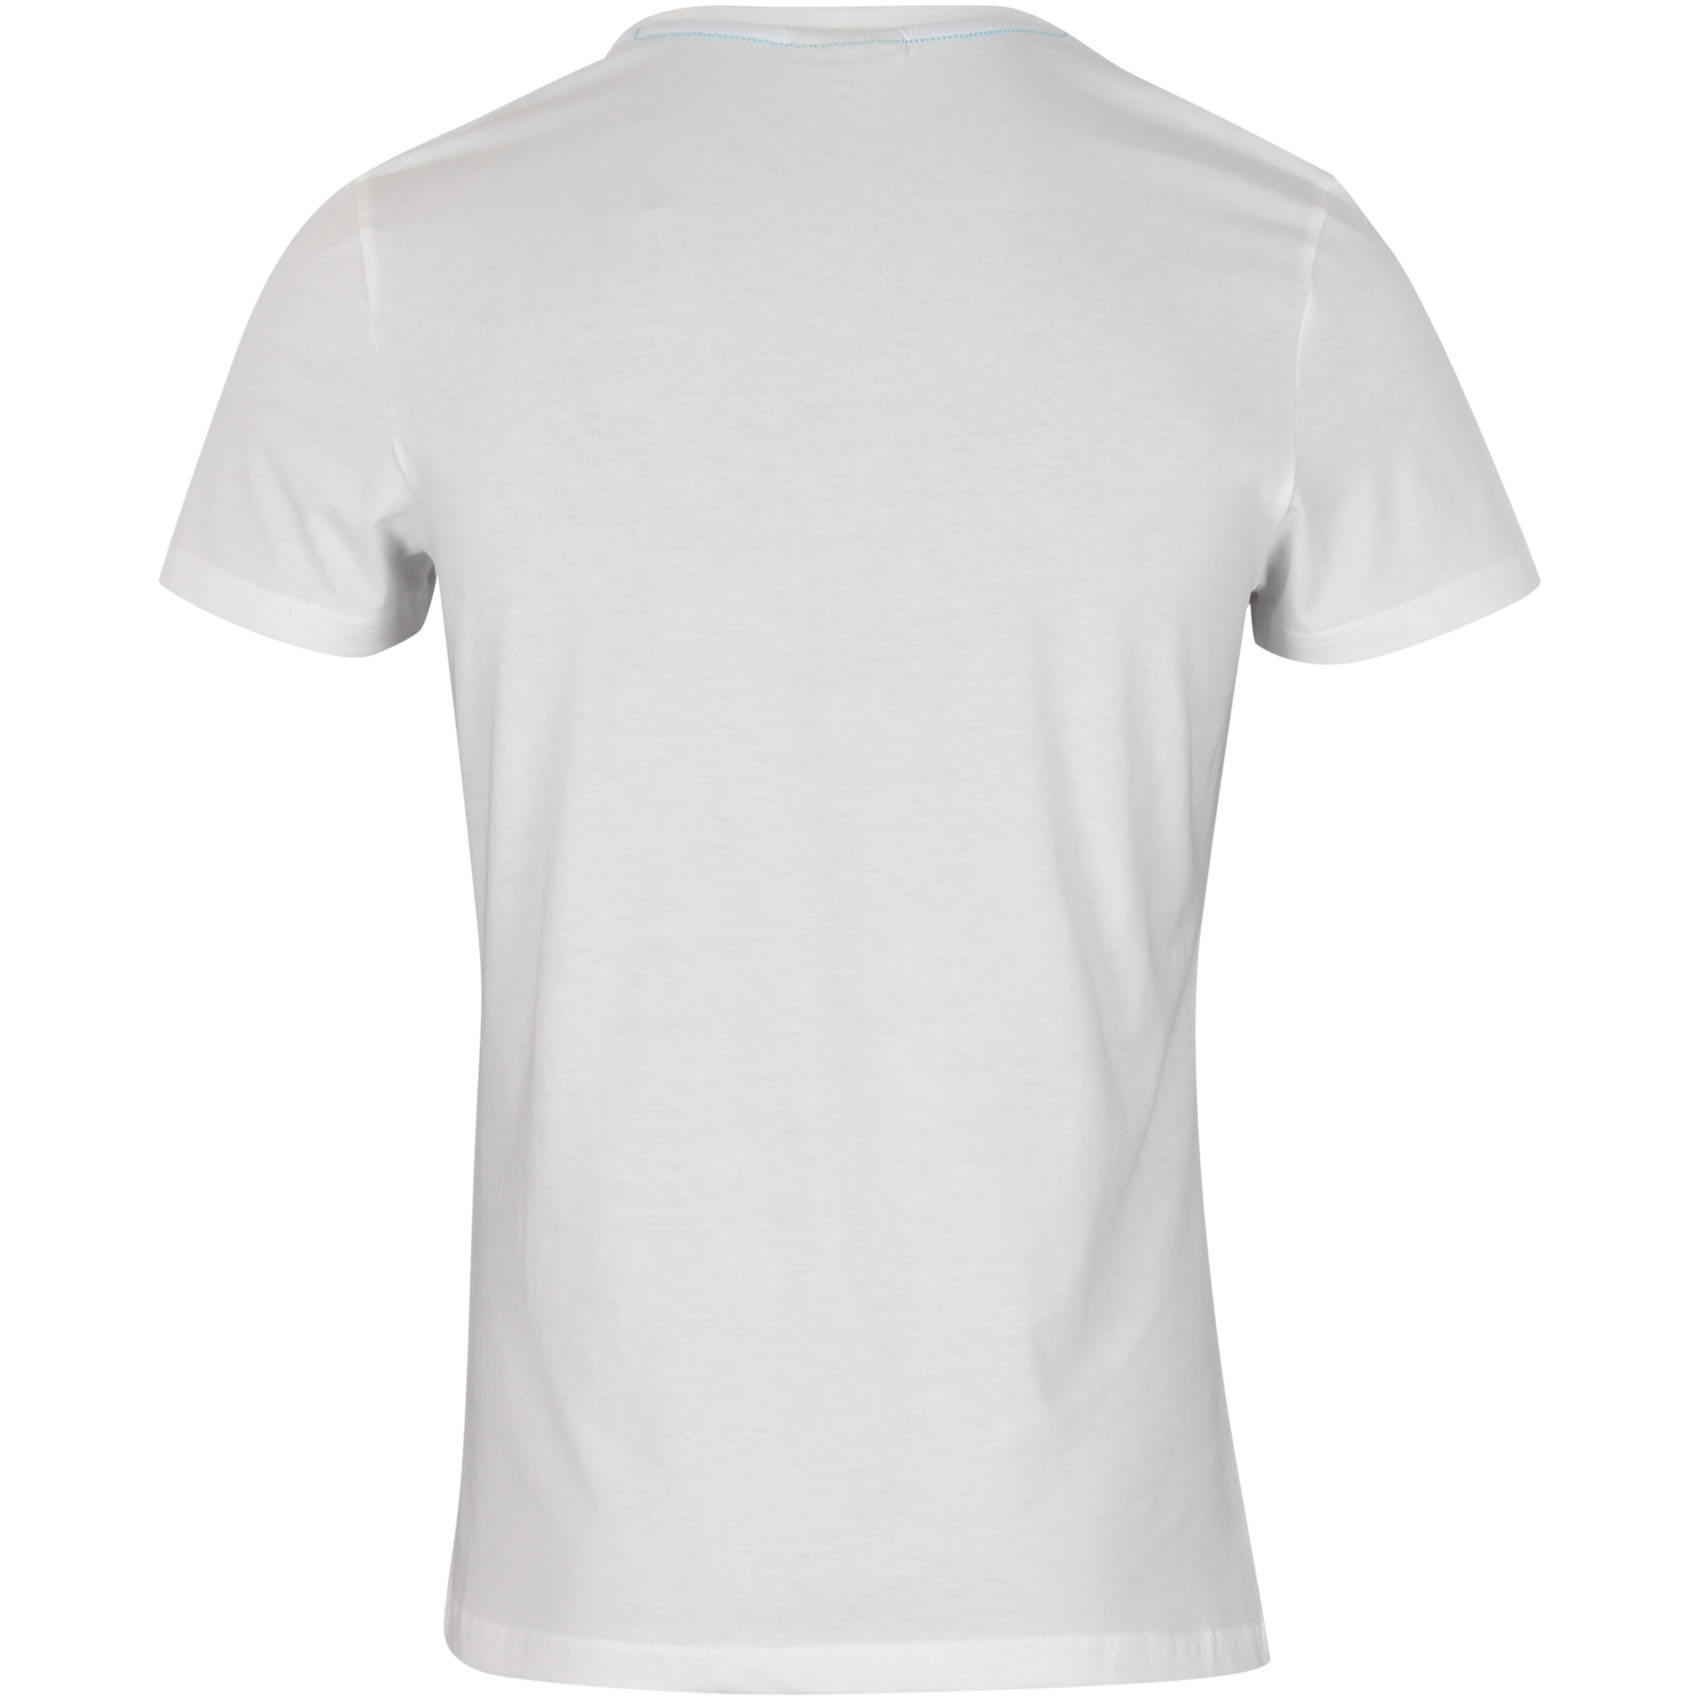 Hummel T-Shirt Hexagon - Weiß/Blau, Gr. S 